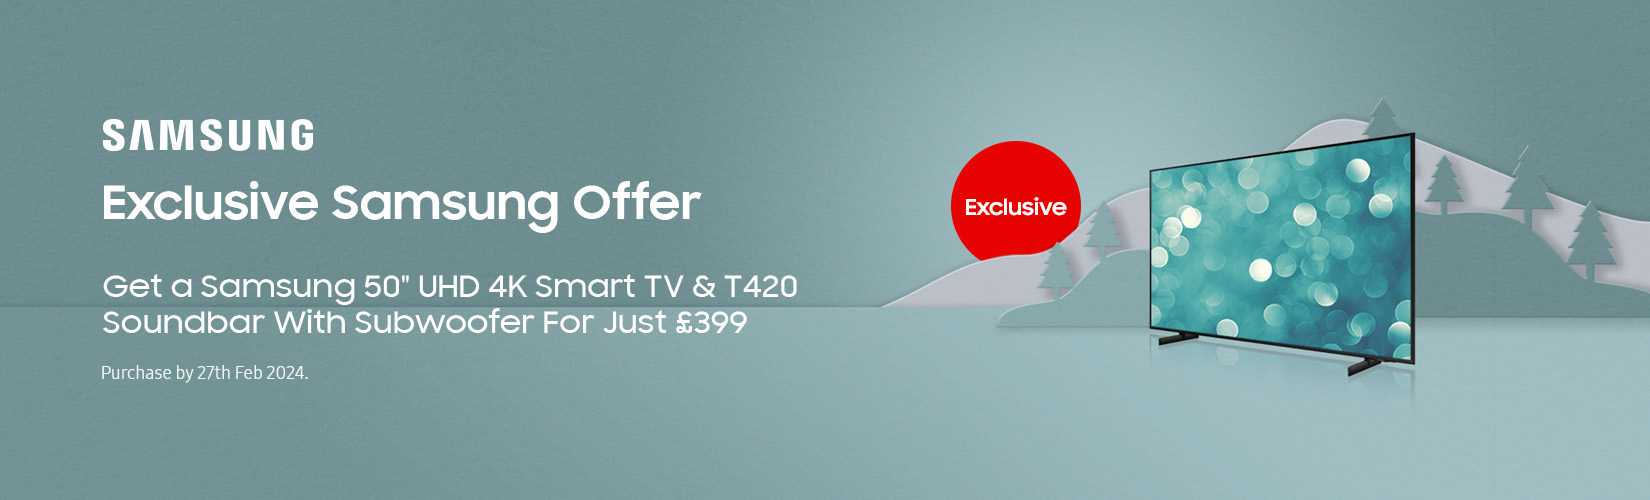 Exclusive Samsung Offer. Get a Samsung 50" UHD 4K Smart TV & T420 Soundbar With Subwoofer For Just £399.